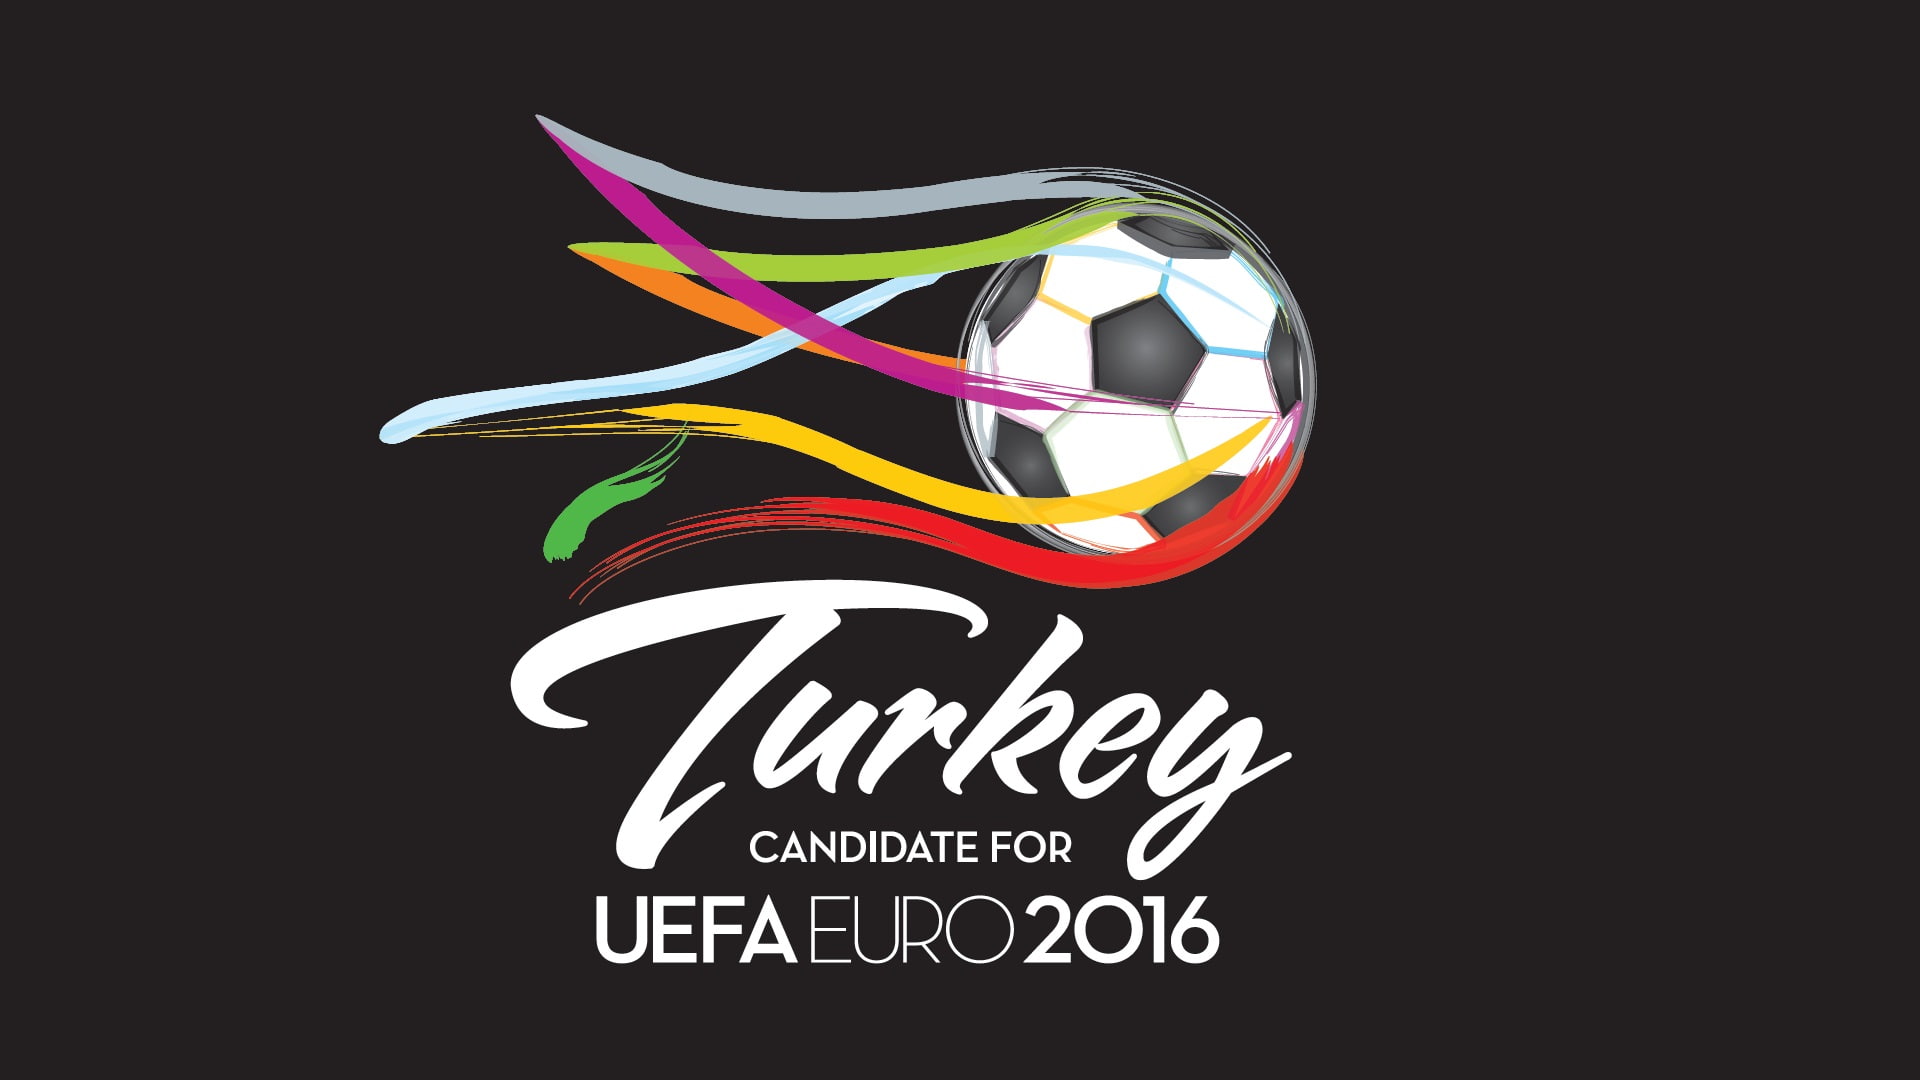 UEFA EURO 2016, Turkey, football, colorful